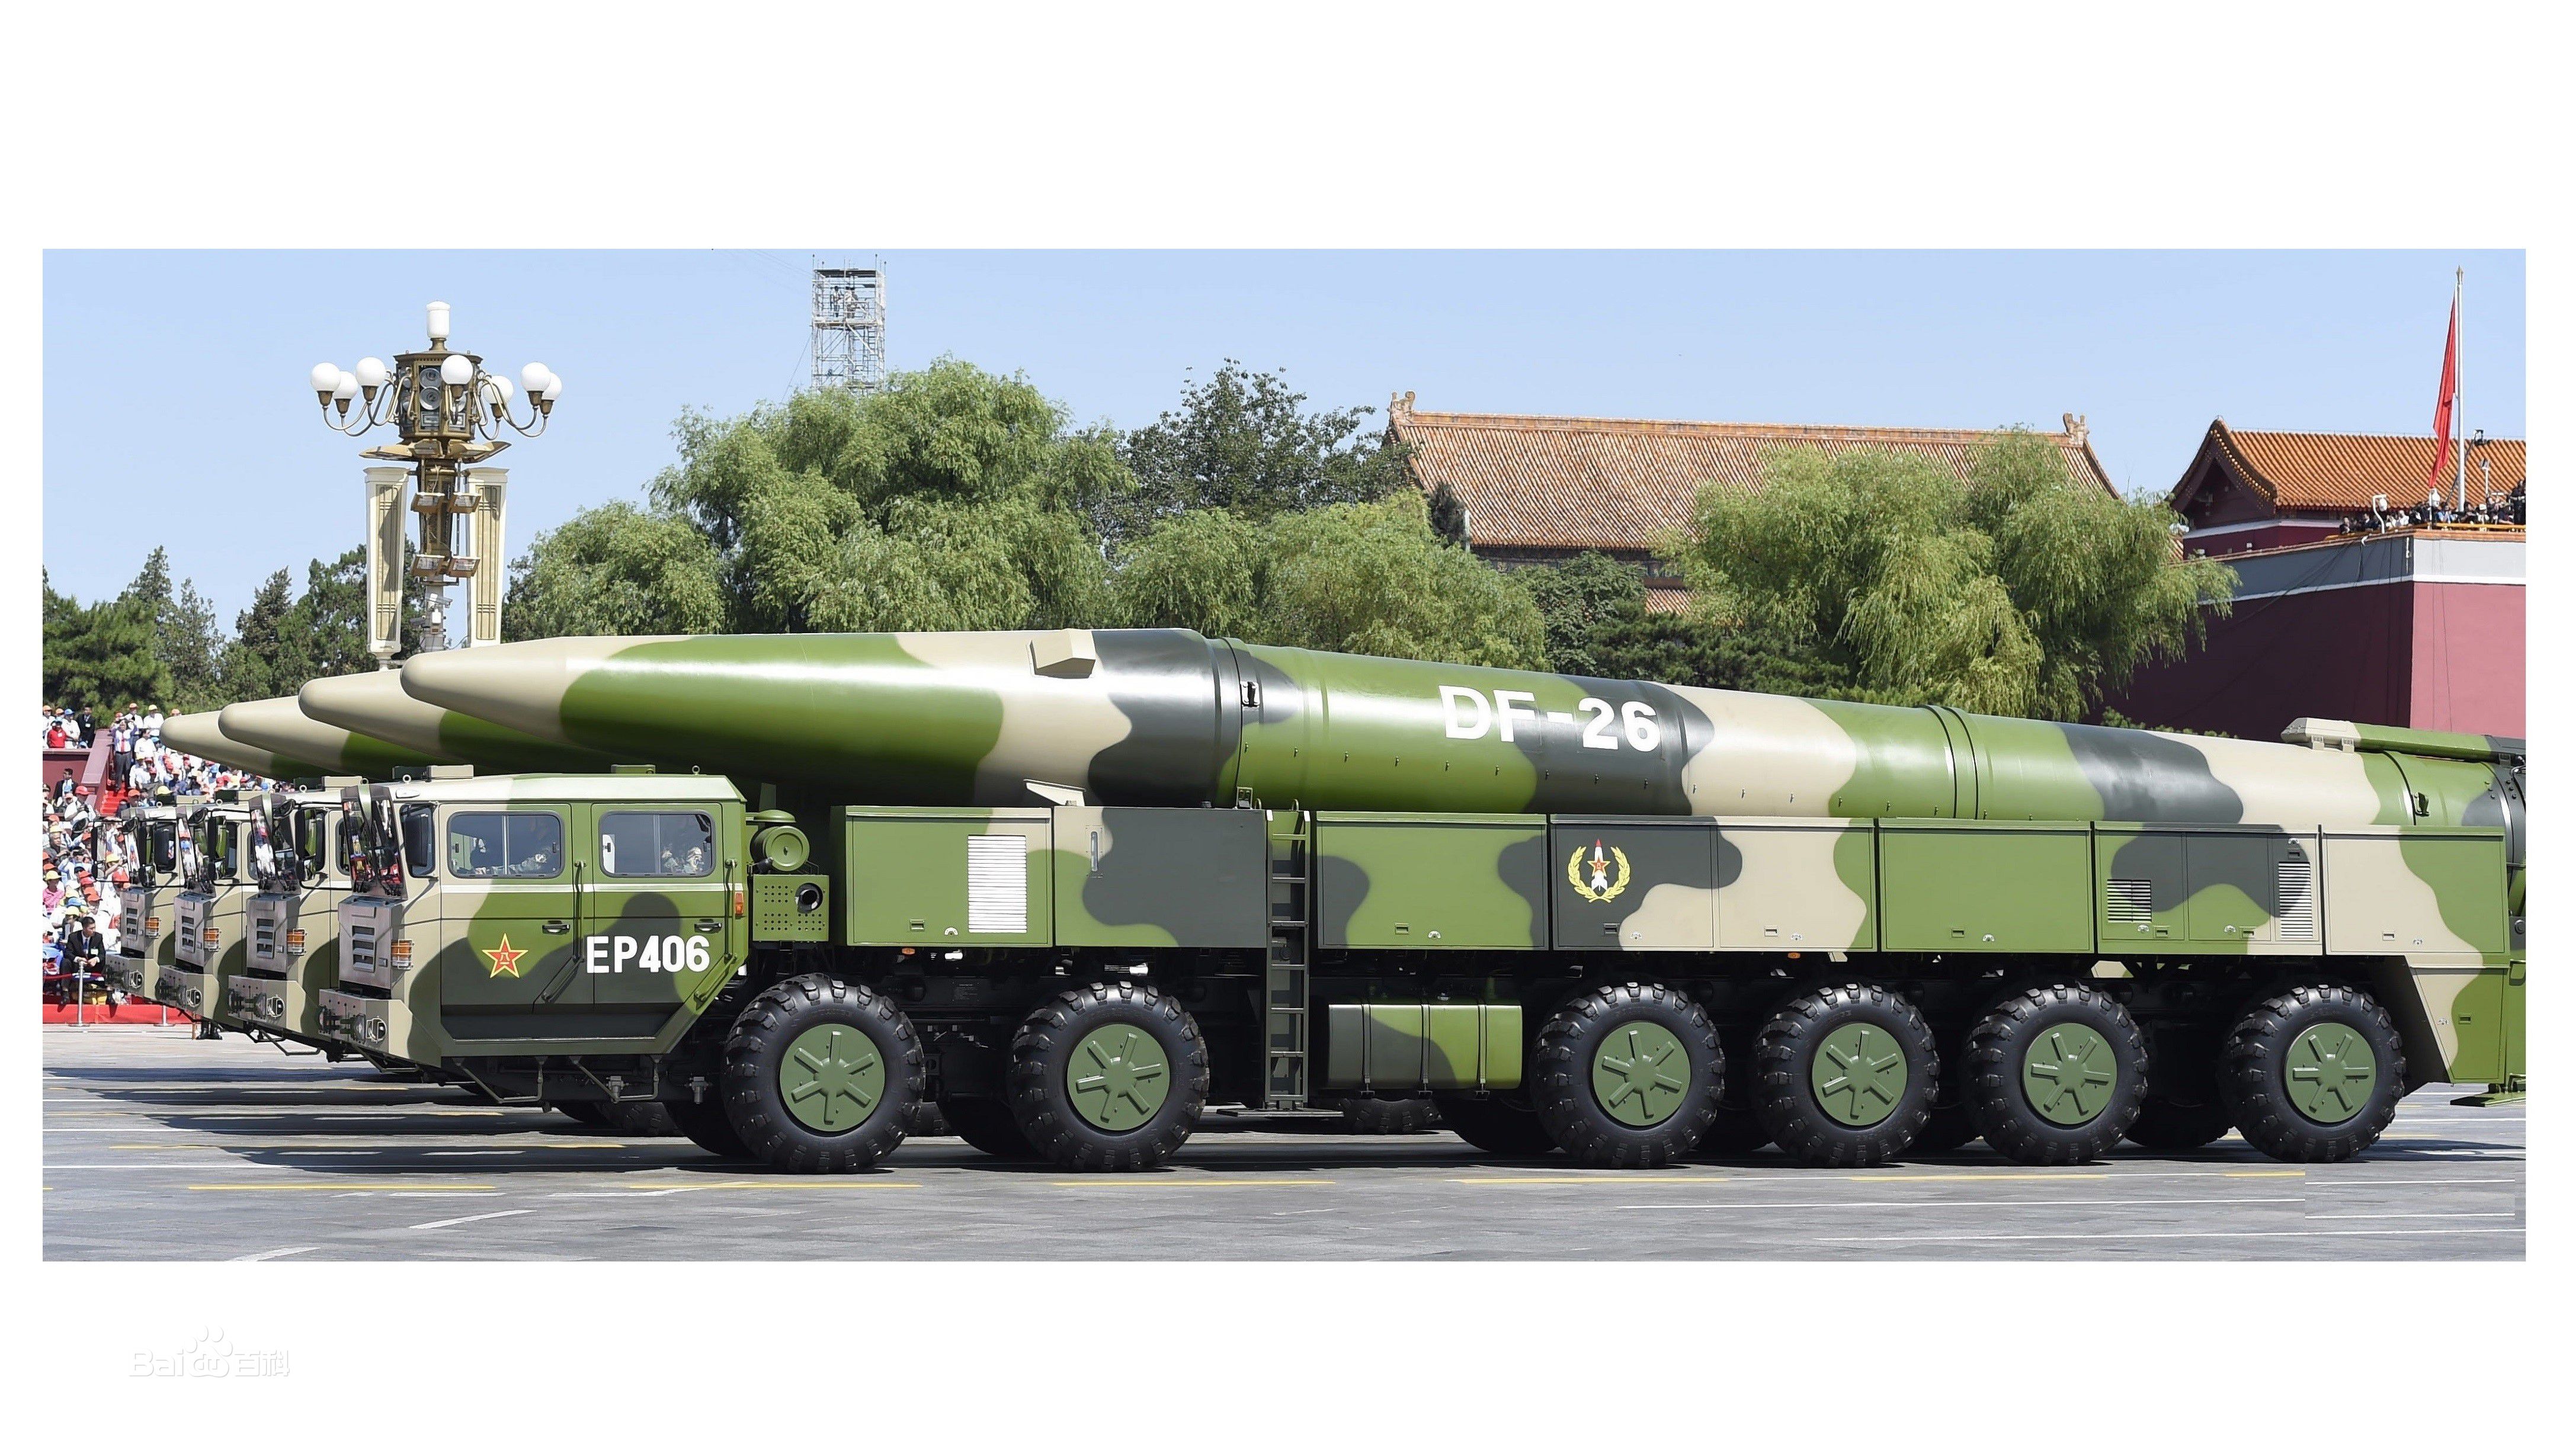 国防部证实:东风26型导弹已经列装火箭军部队!